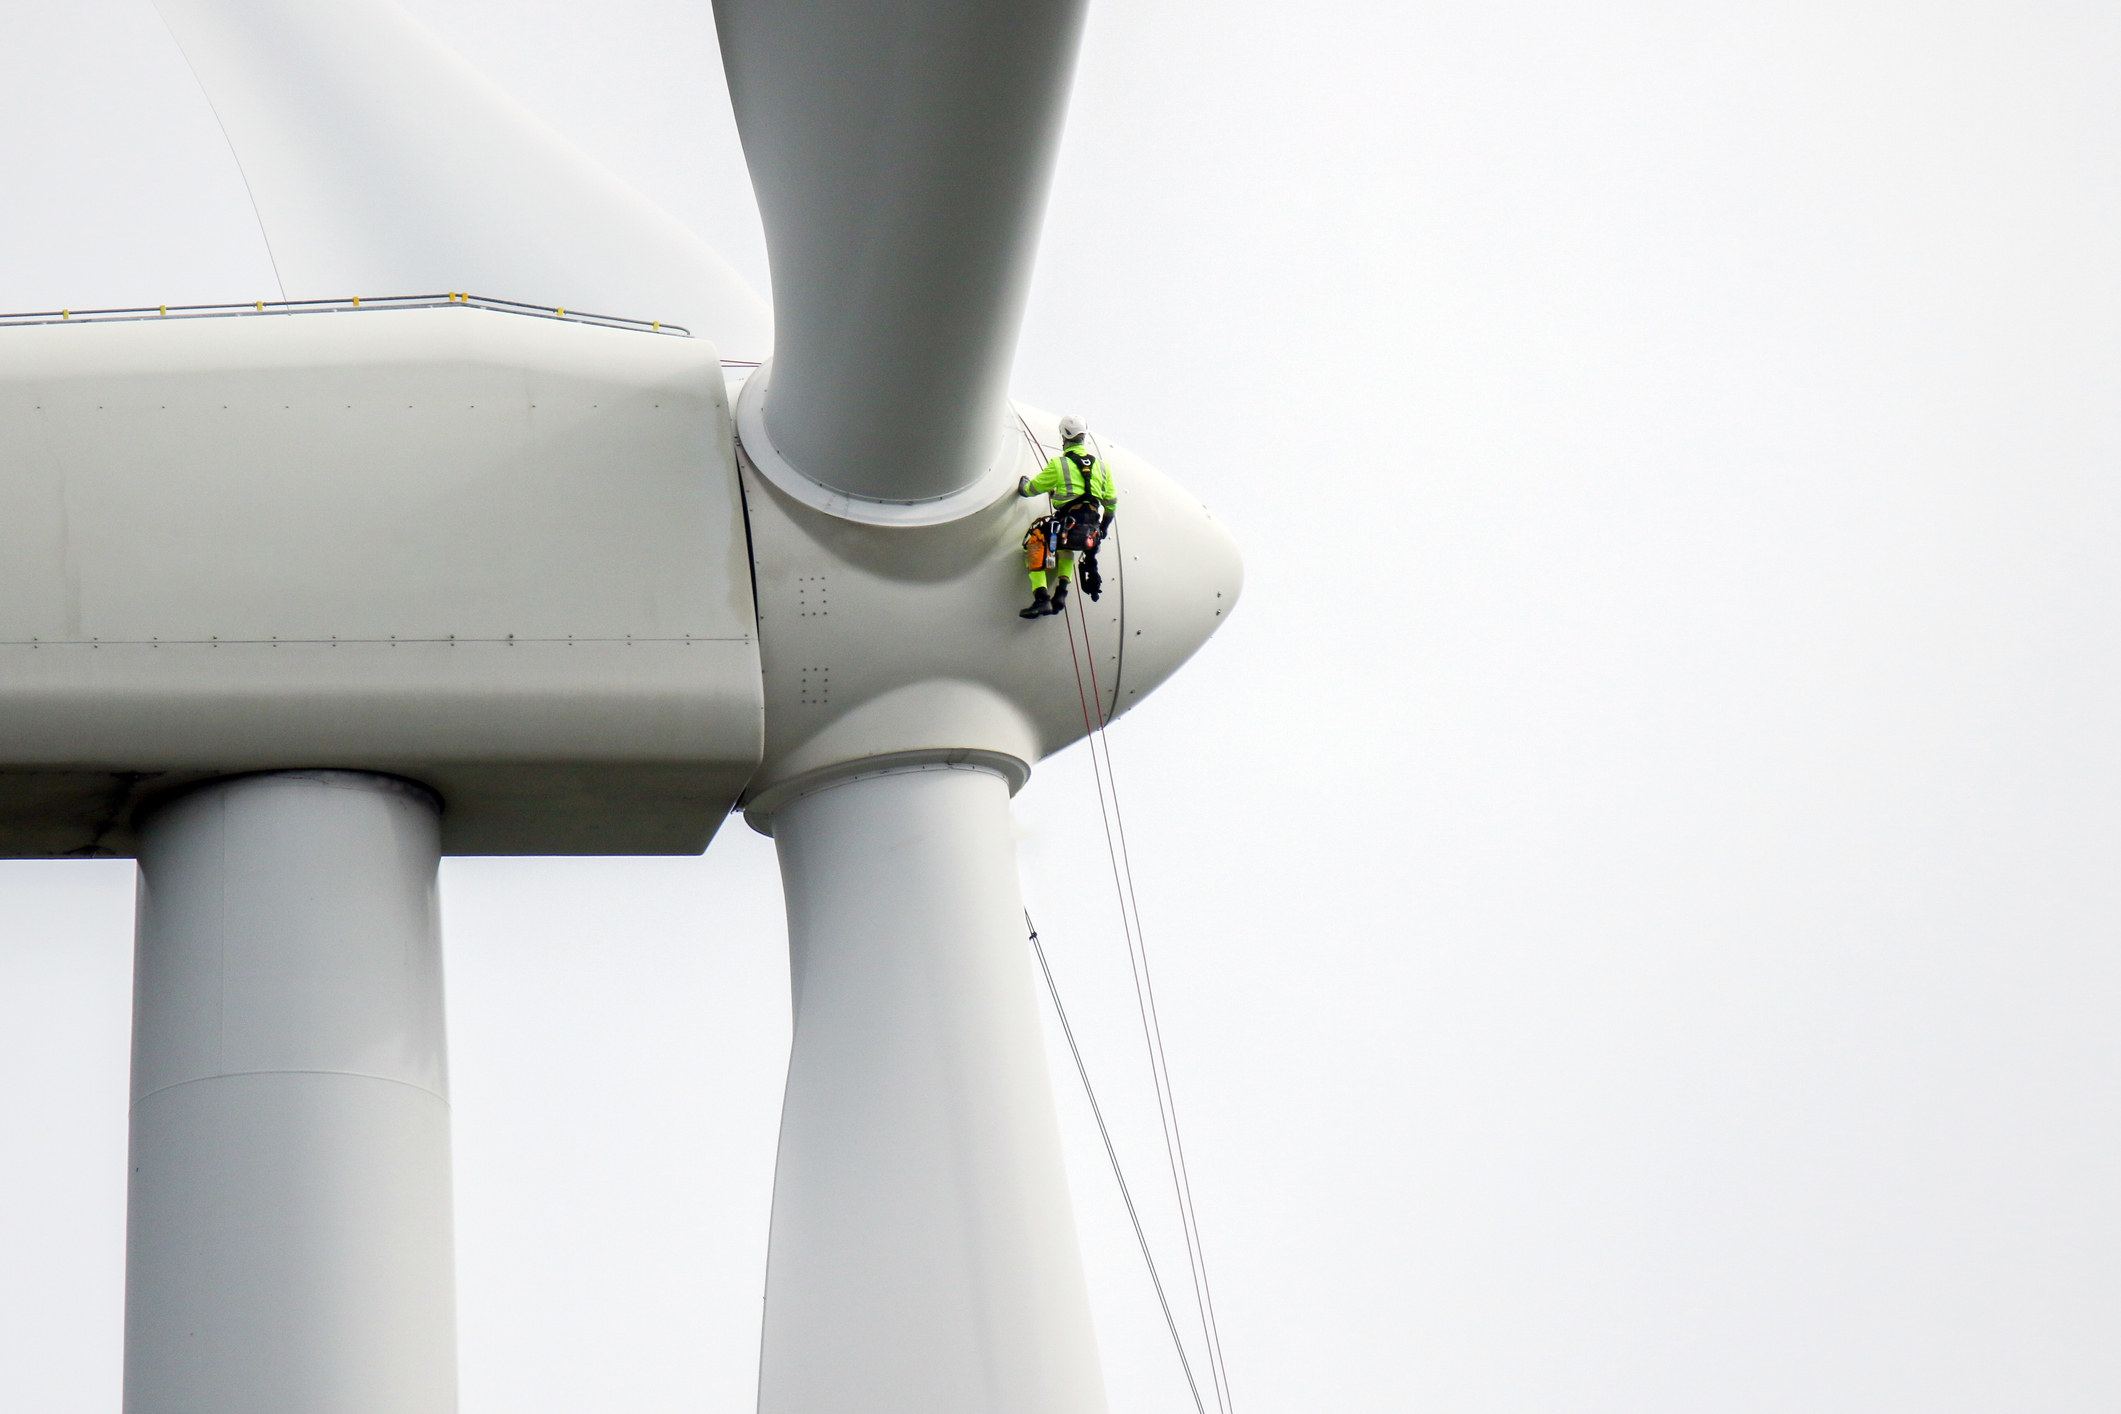 A man on a wind turbine